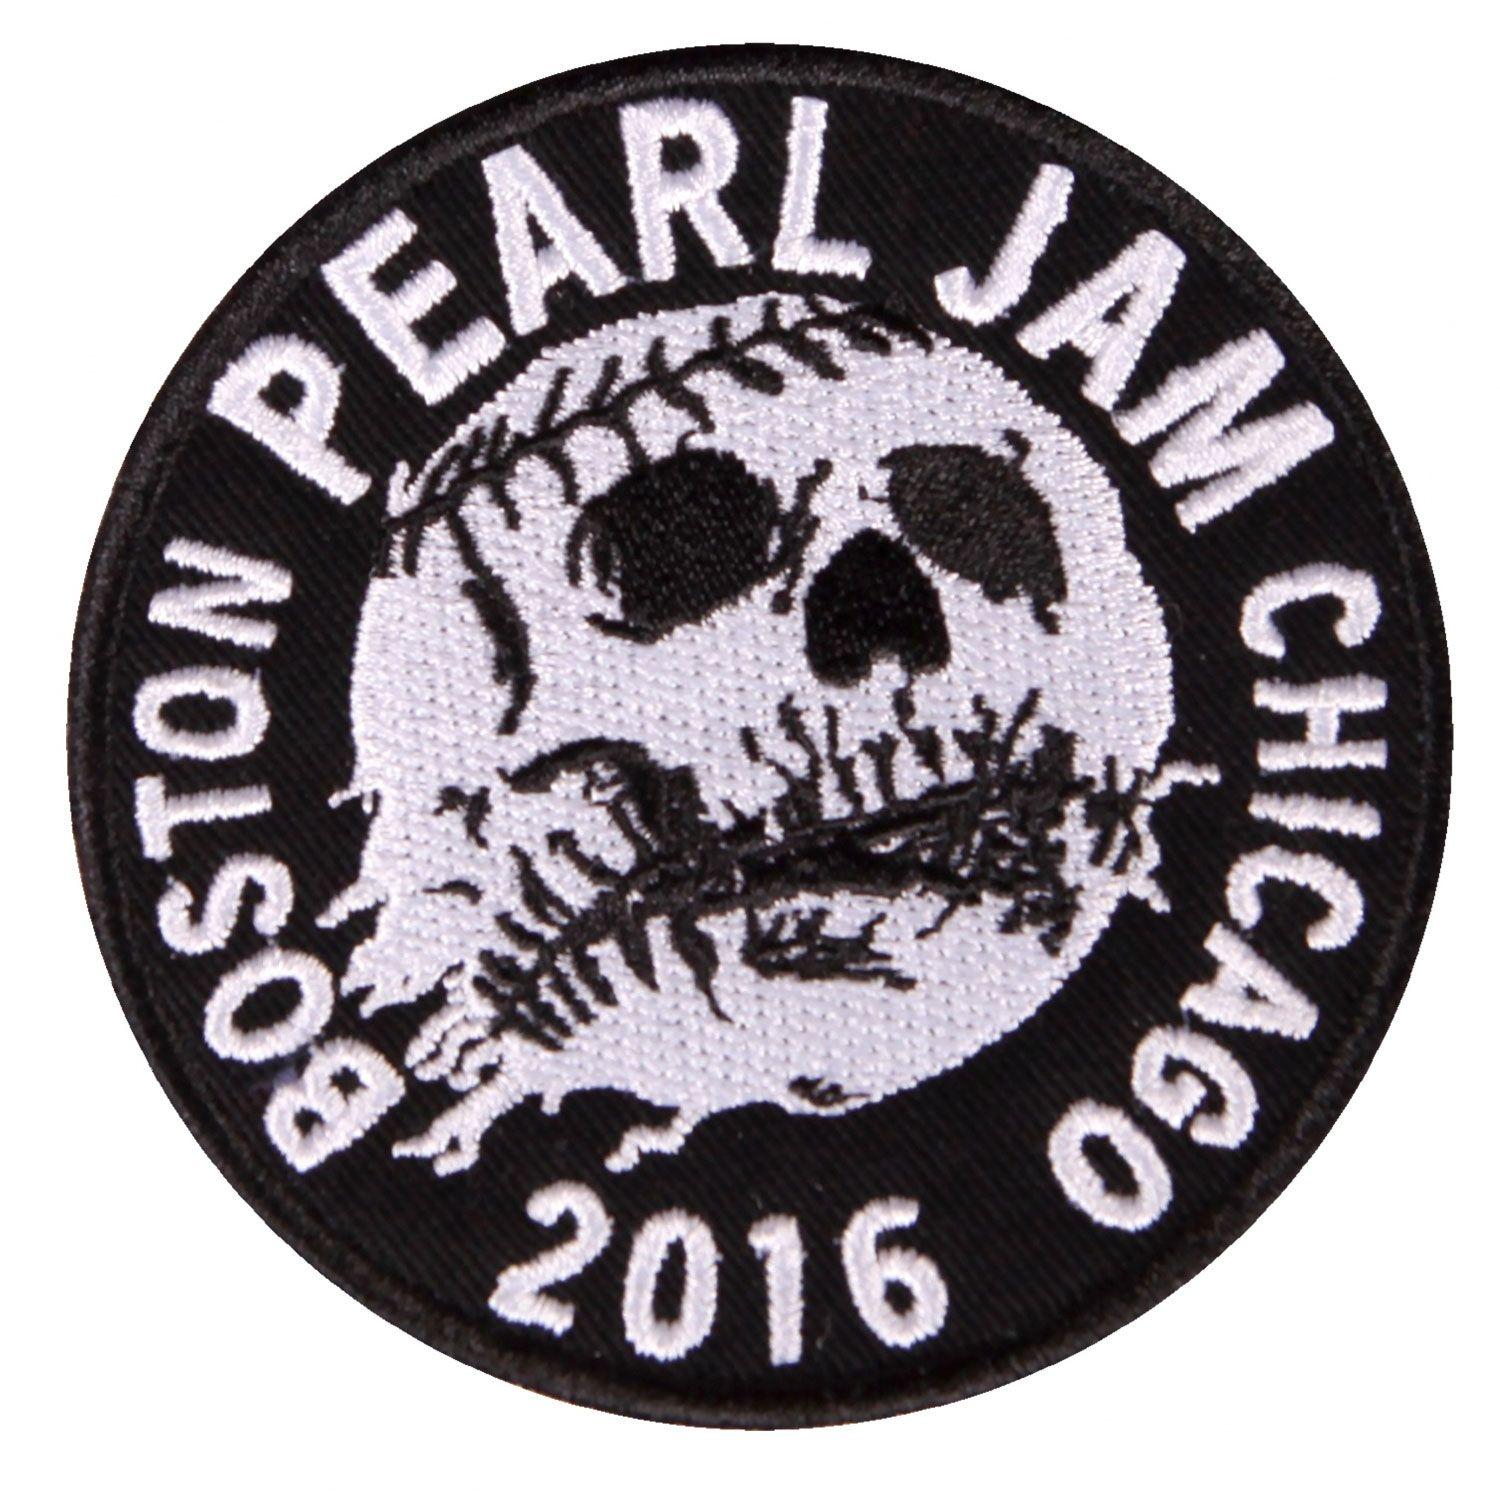 Pearl Jam Skull Logo - Pearl Jam Chicago Skull Ball Patch